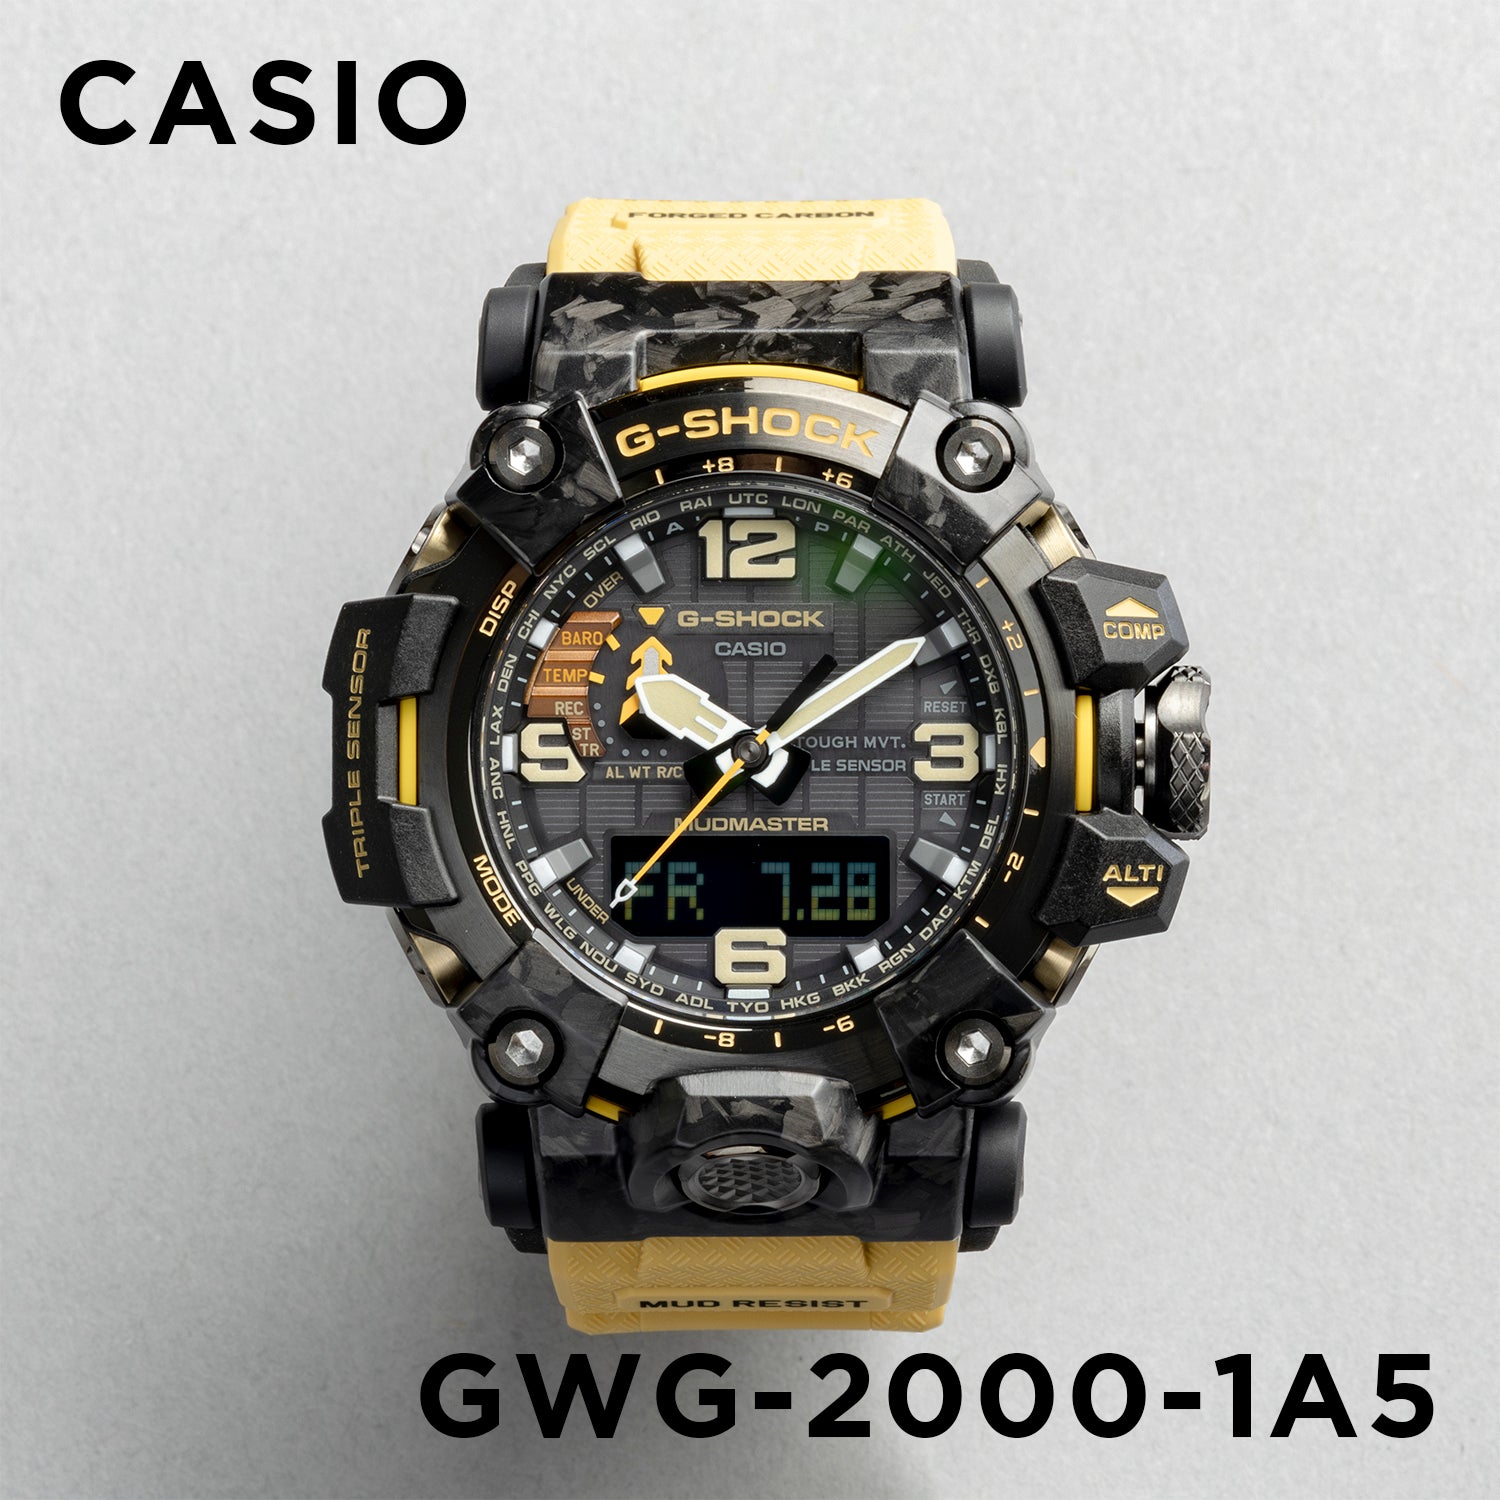 Casio G-shock Mudmaster GWG-2000-1A5